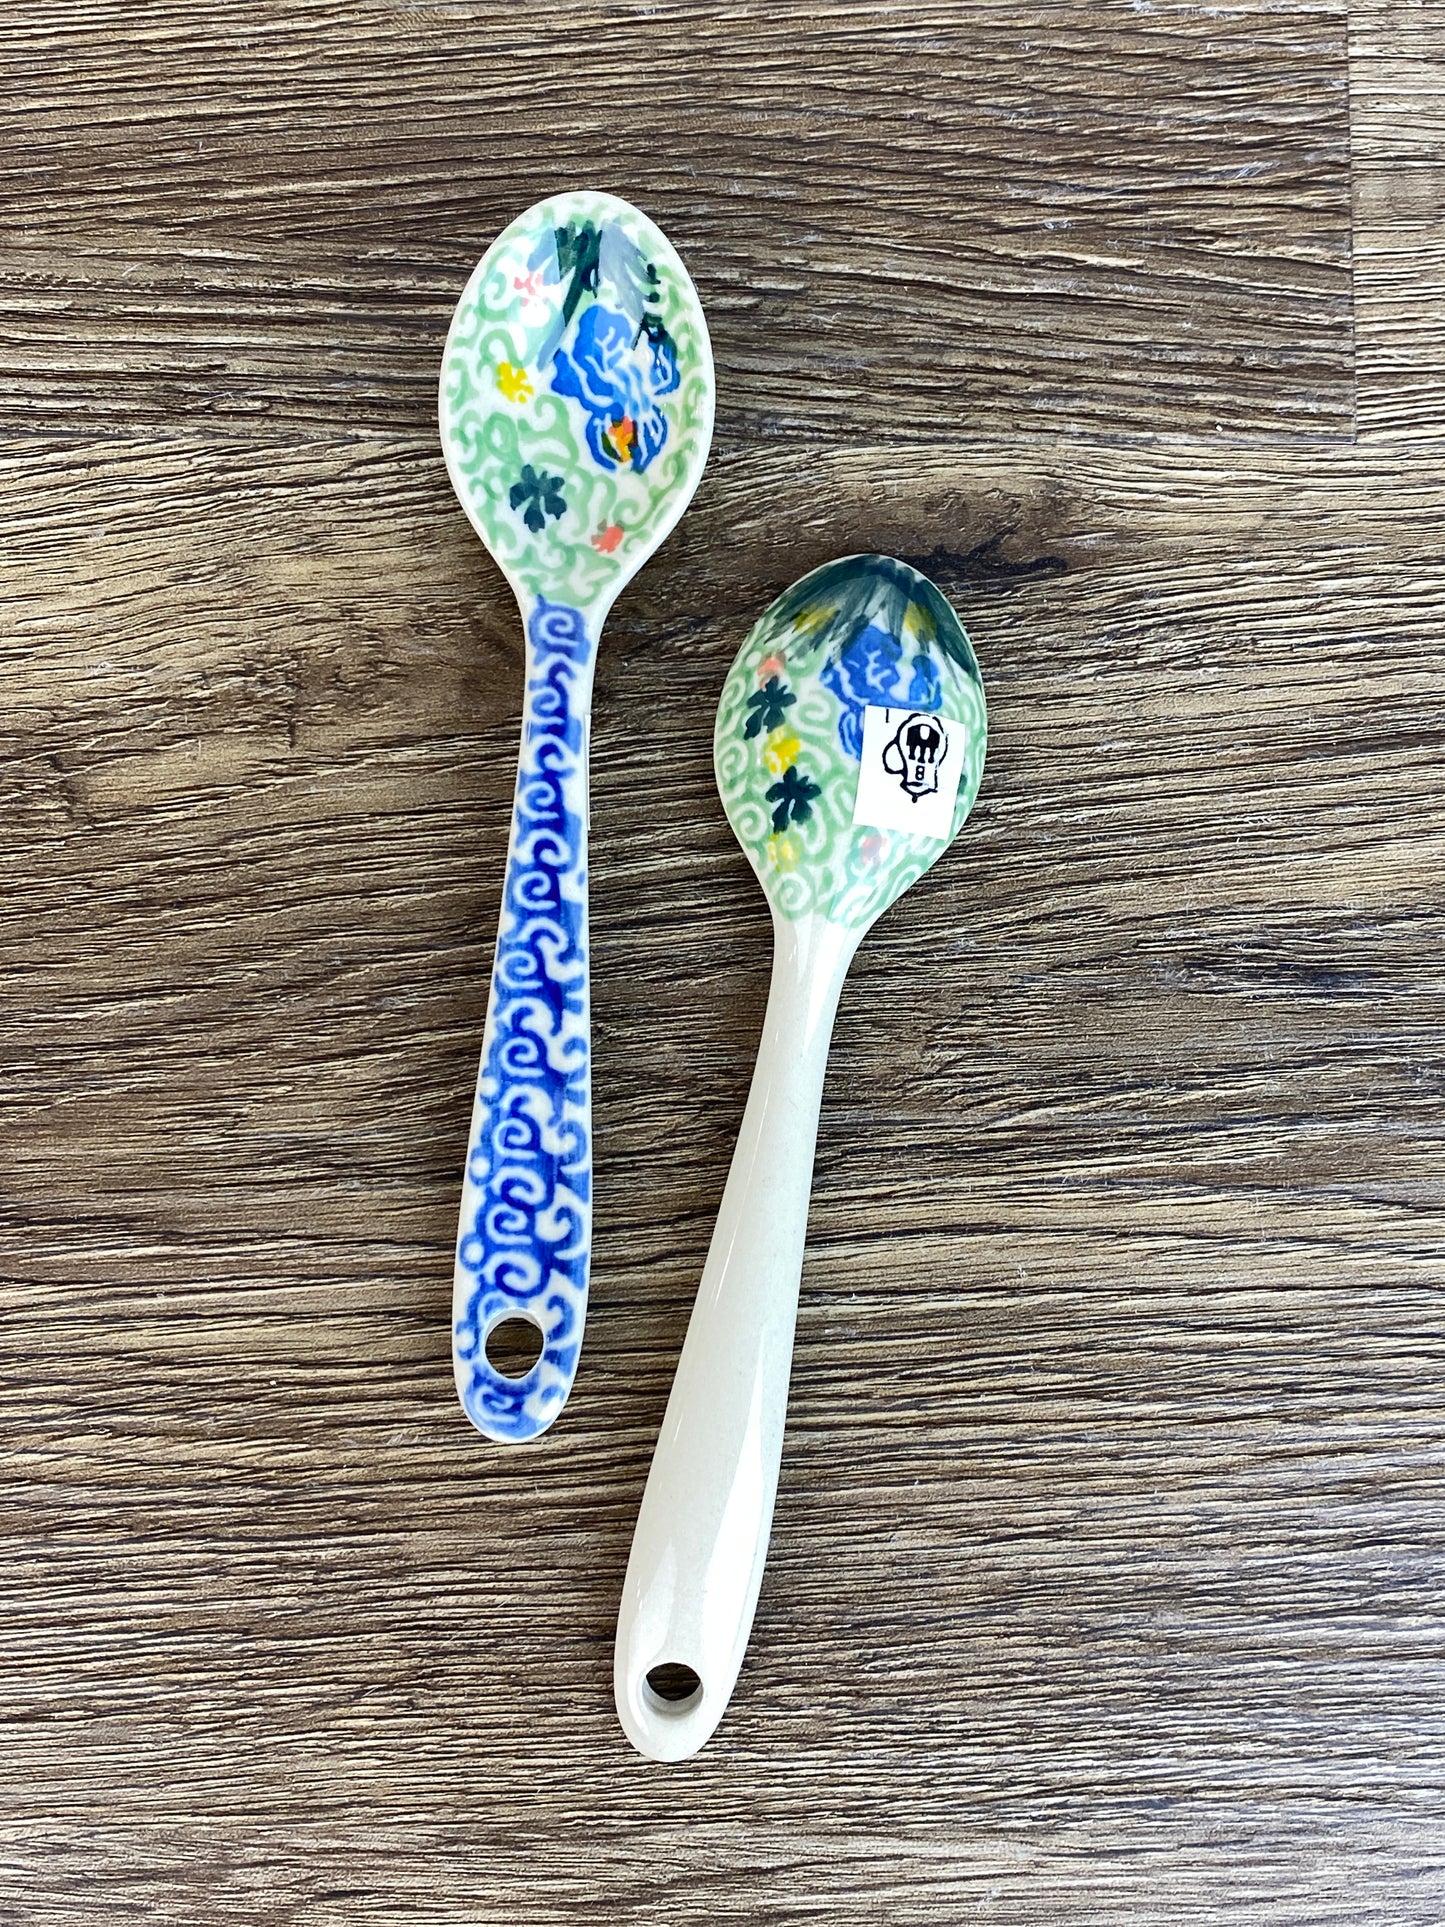 Unikat Small Sugar Spoon - Shape 592 - Pattern U4712